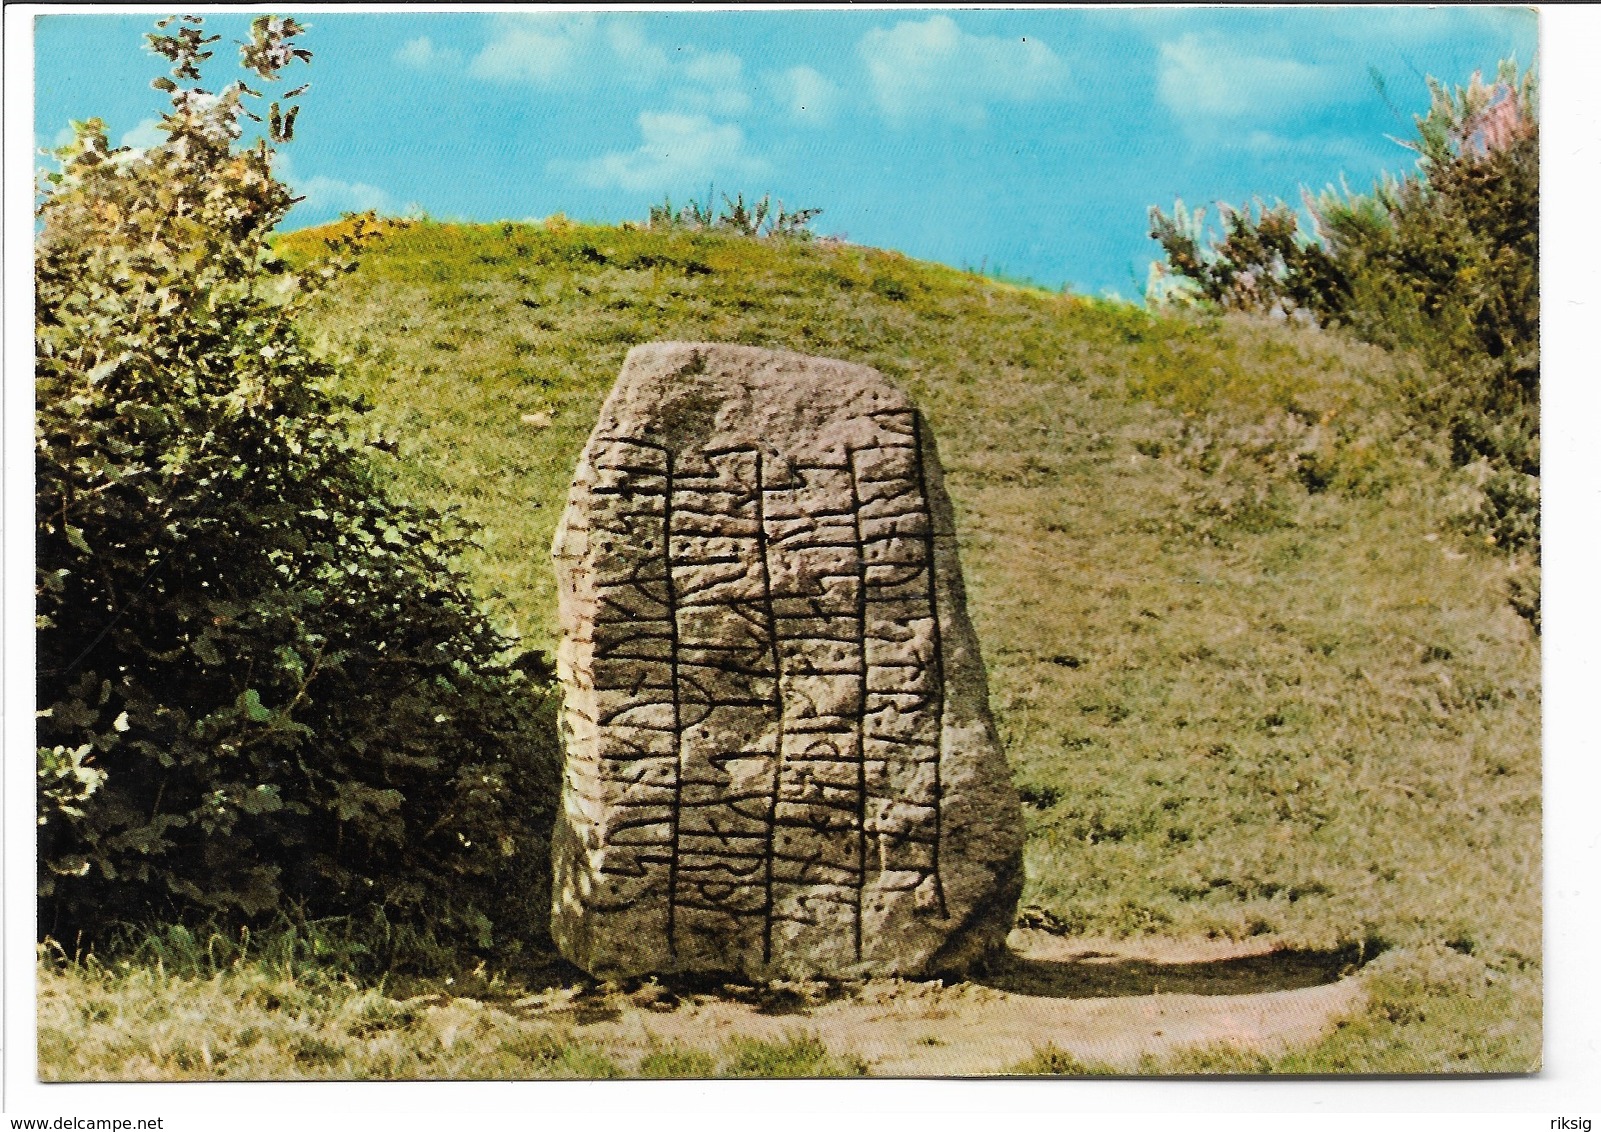 Runicstone - Runenstein In Busdorf. Schleswig Germany   B-1028 - Dolmen & Menhirs